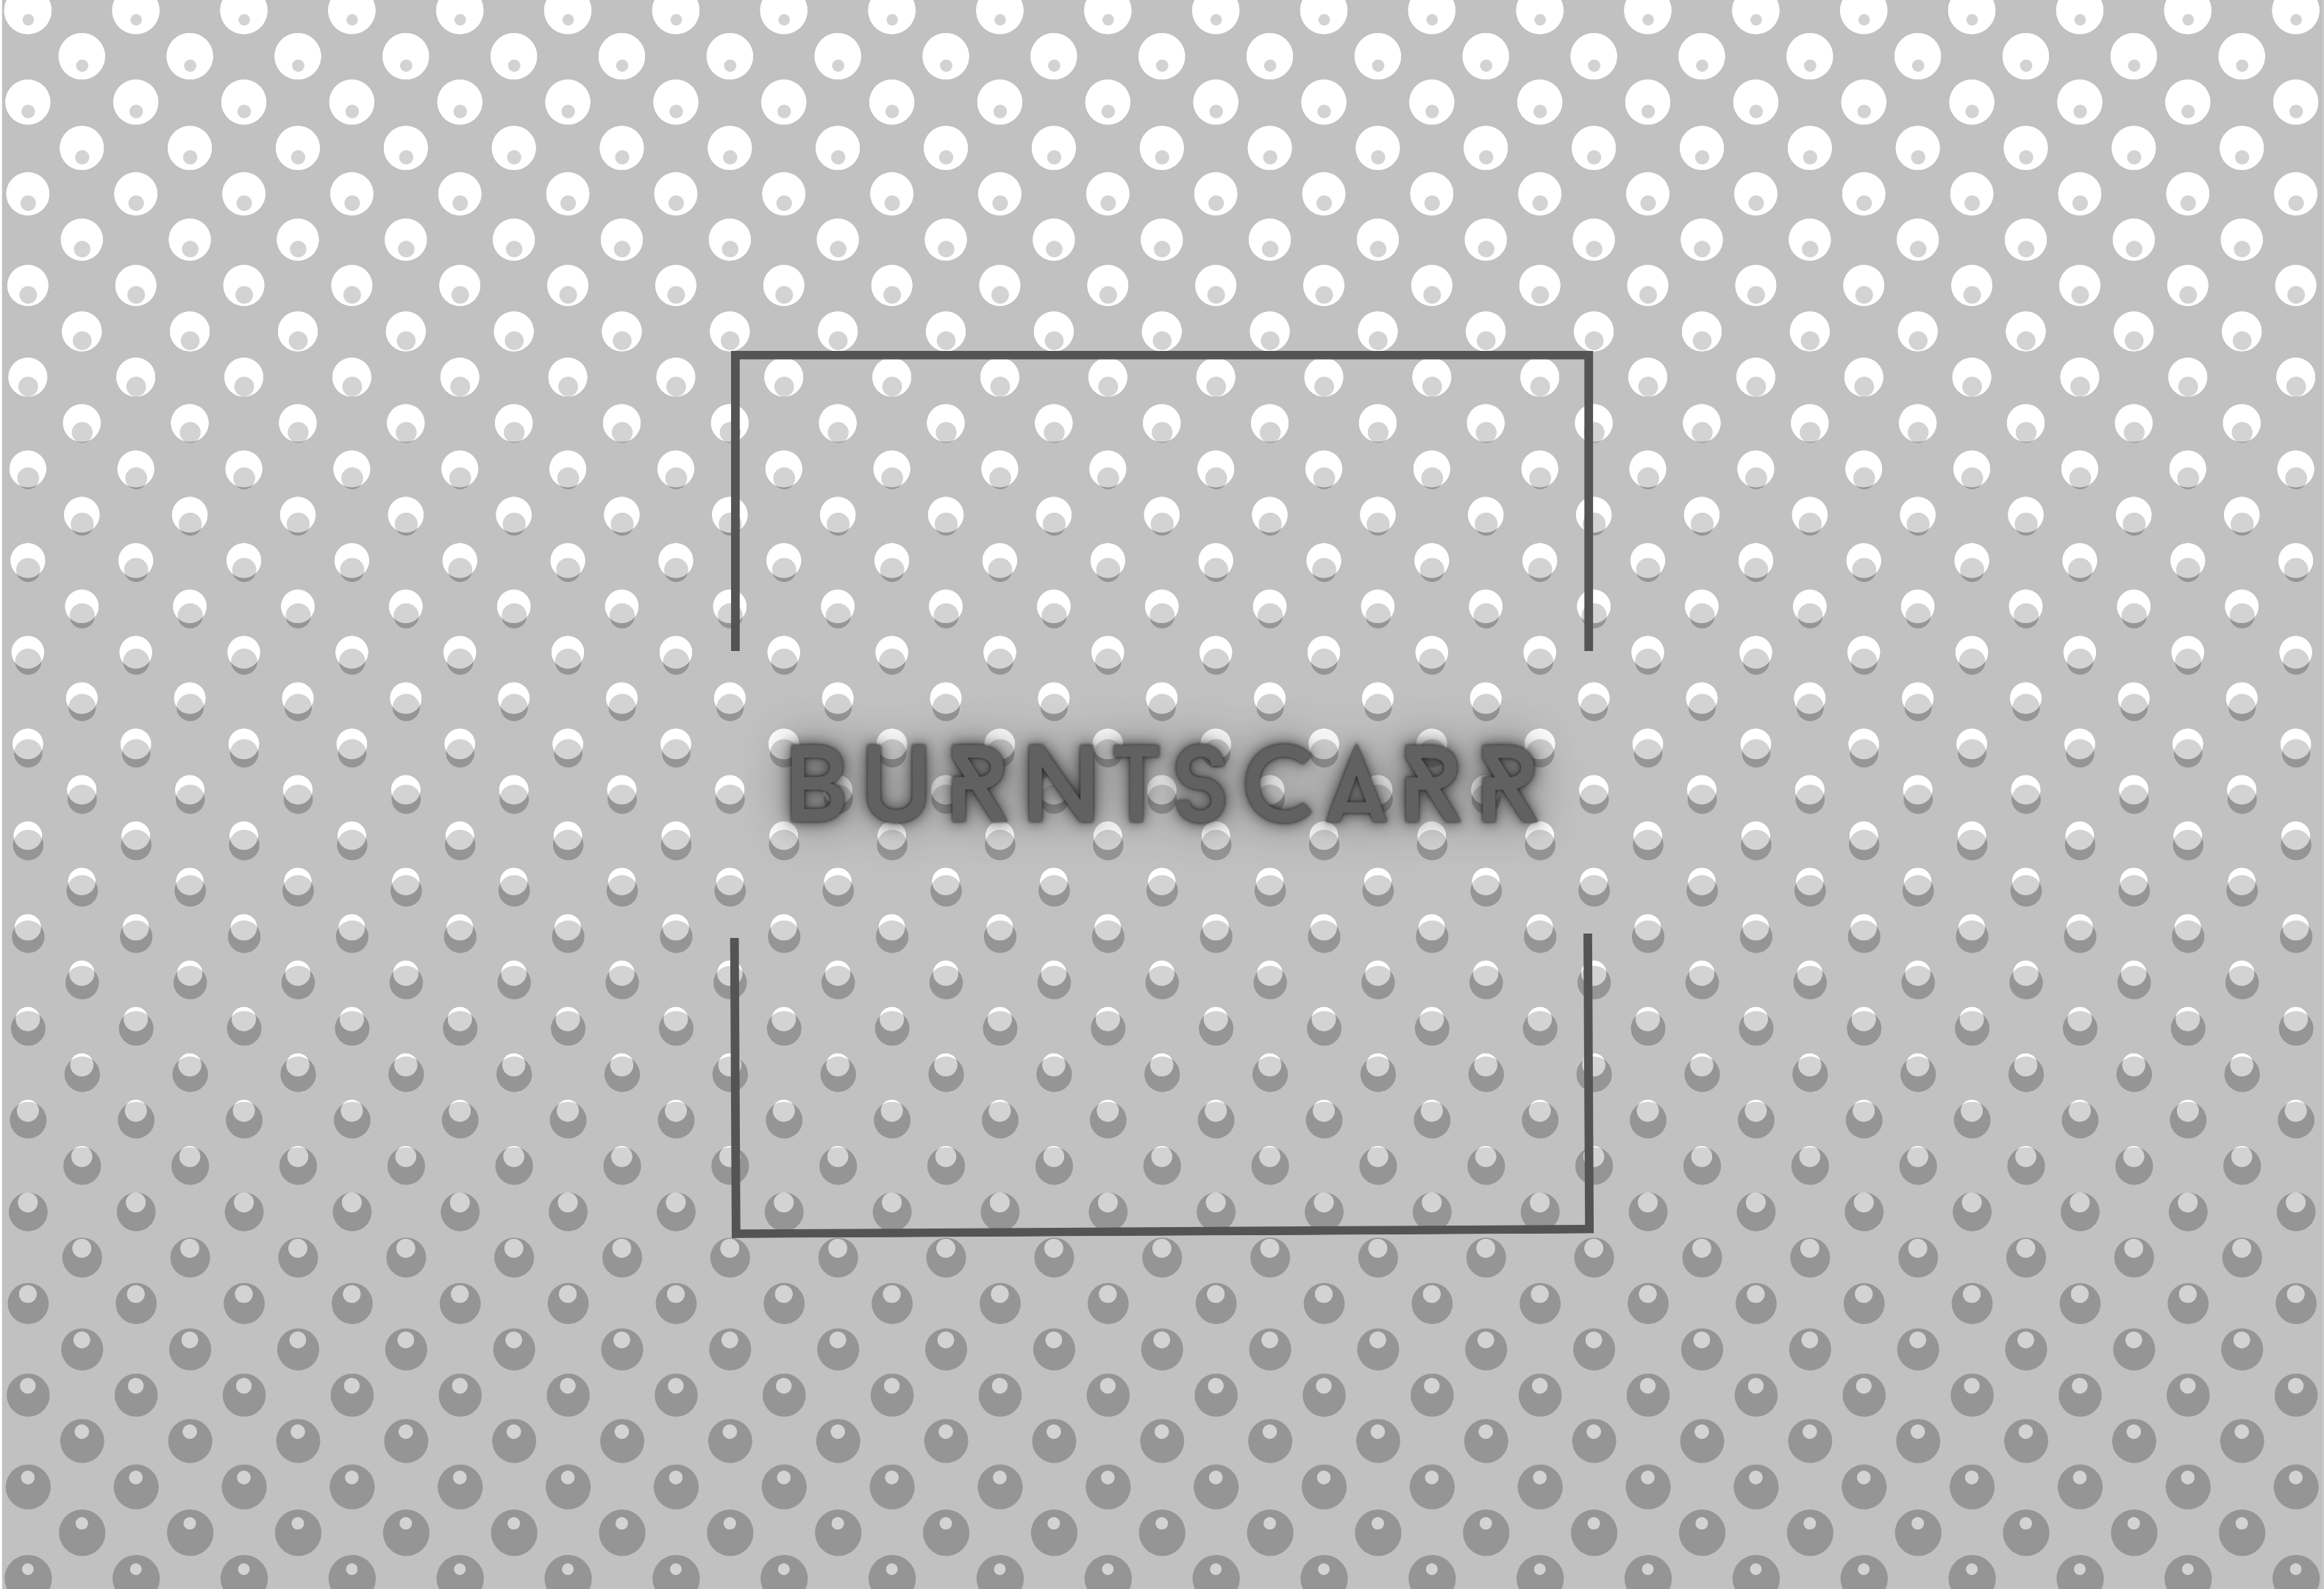 burntscarr - Tattoo My Car (B-Side)